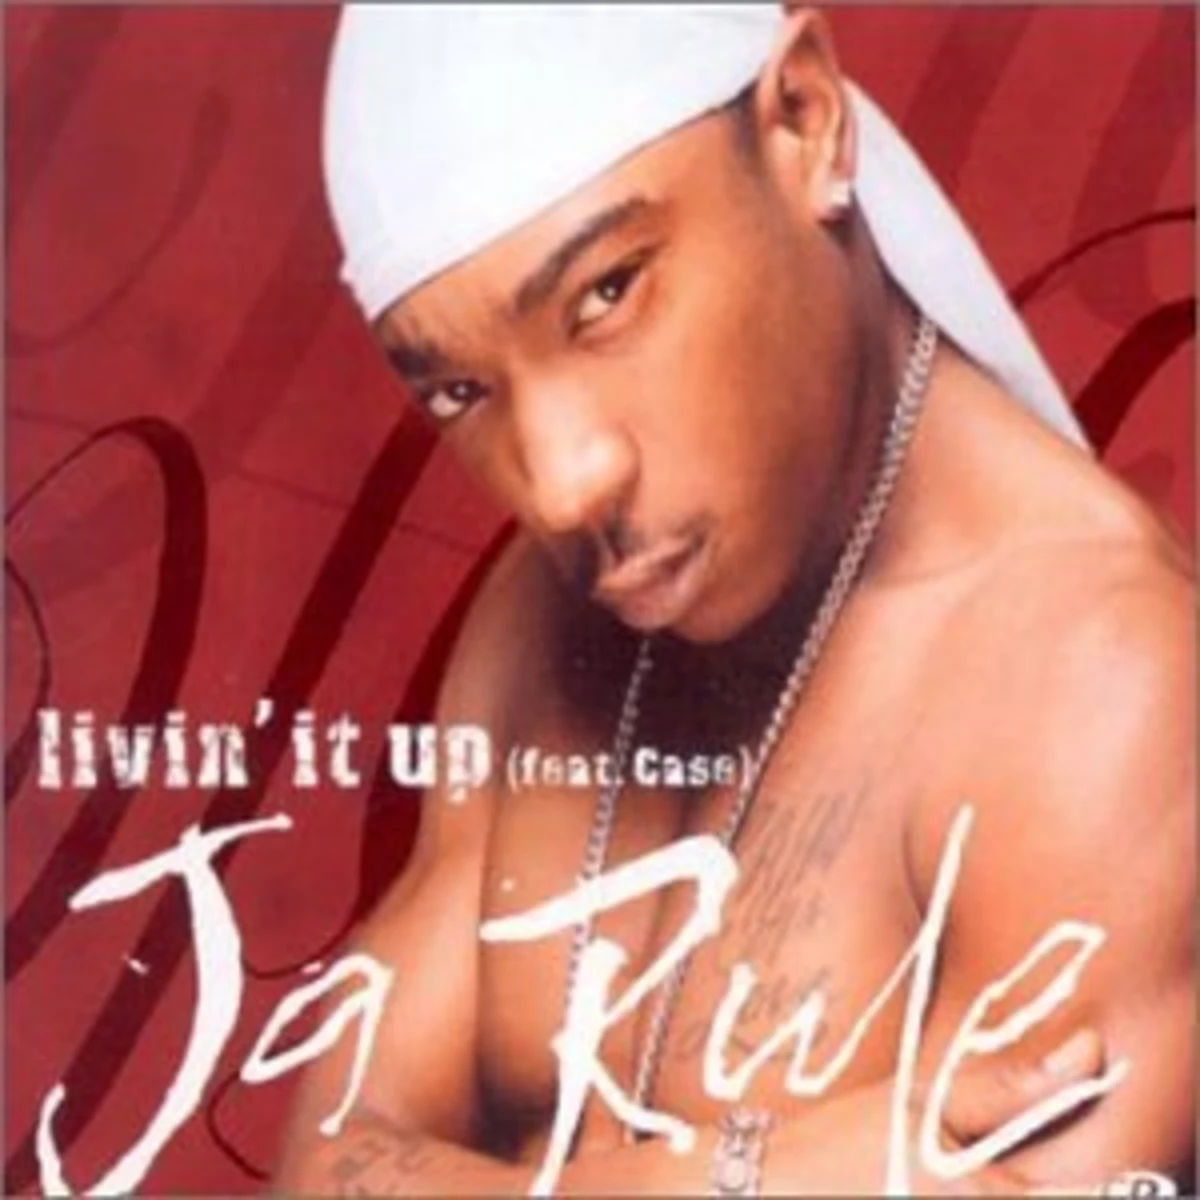 Maxi cd. Ja Rule ft Case - Livin' it up. Ja Rule альбом ja Rule. Kaarija певец. Ja Rule album Cover.